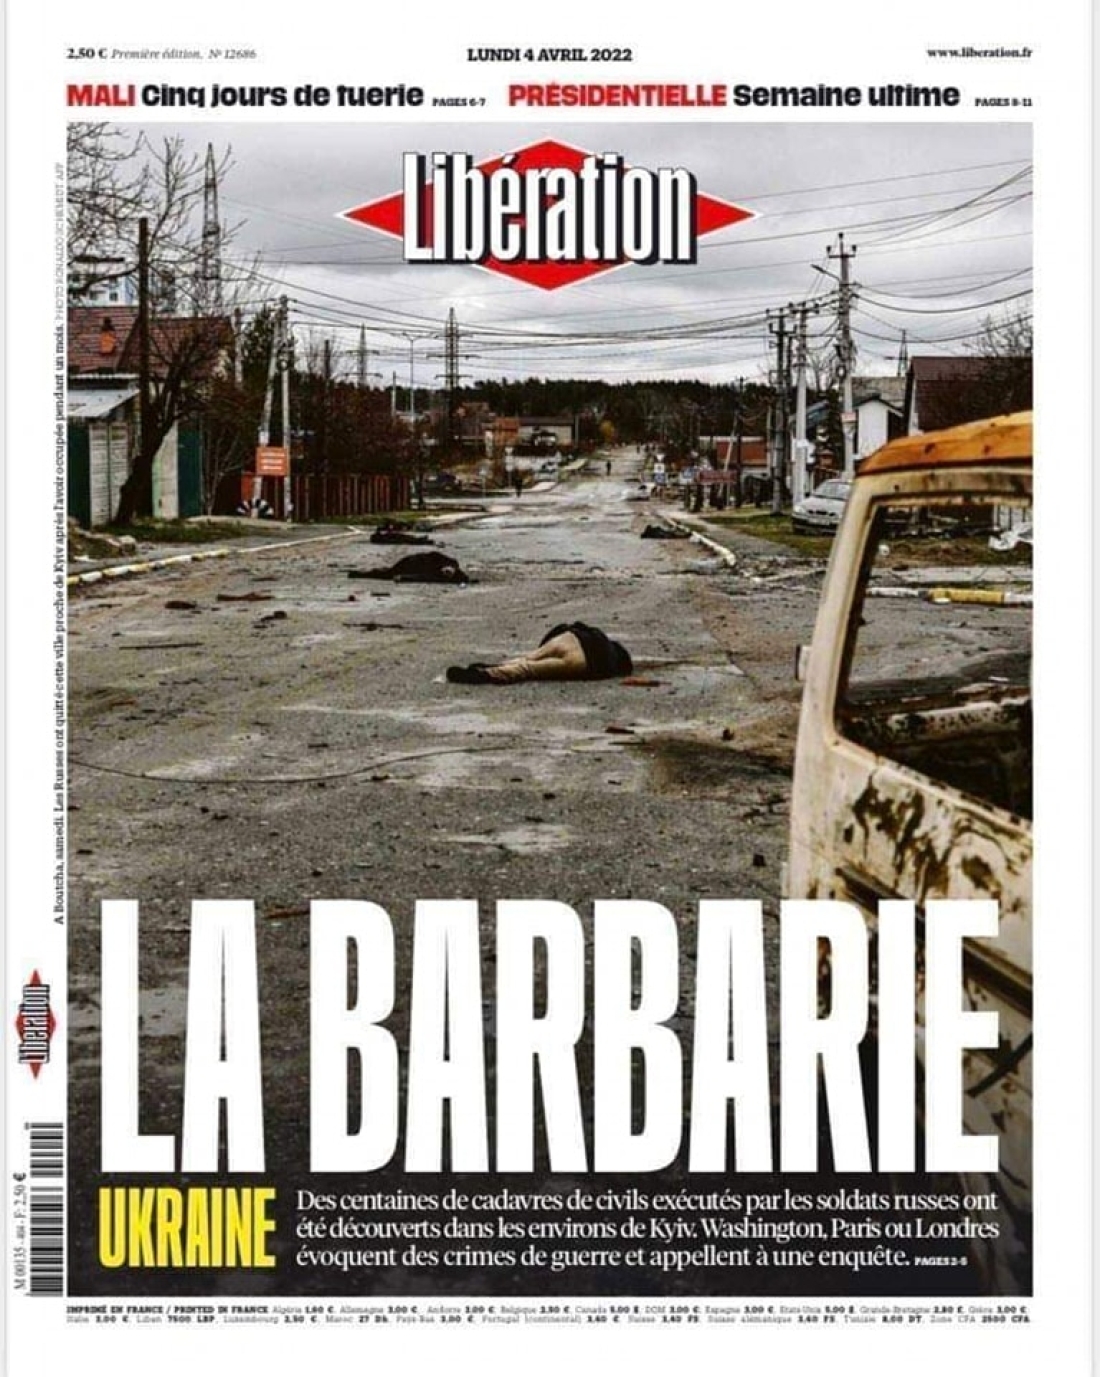 Η γαλλική Liberation σχολιάζει πρωτοσέλιδα την αιματοχυσία στην Μπούτσα της Ουκρανίας.